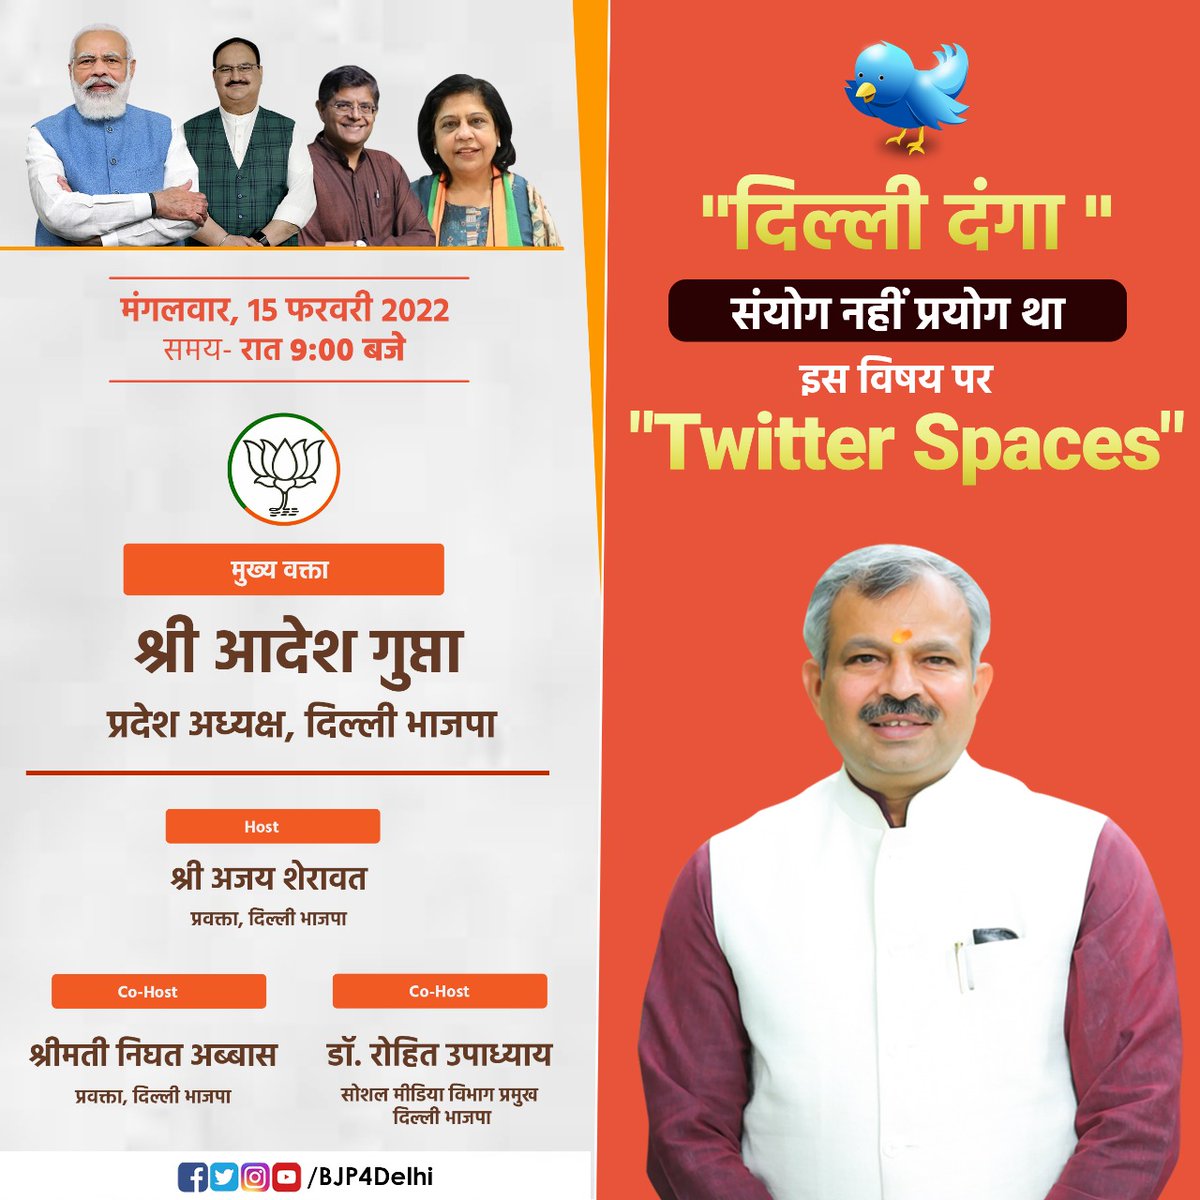 आज 'दिल्ली दंगा' - संयोग नहीं प्रयोग ,पर हमारी ट्विटर स्पेस से जरूर जुड़े। मुख्य वक्ता के तौर पर - दिल्ली भाजपा के प्रदेश अध्यक्ष श्री @adeshguptabjp जी रहने वाले है। मेरे Co-Host - @abbas_nighat व @rohitTeamBJP जी रहेंगे। twitter.com/i/spaces/1BRJj…